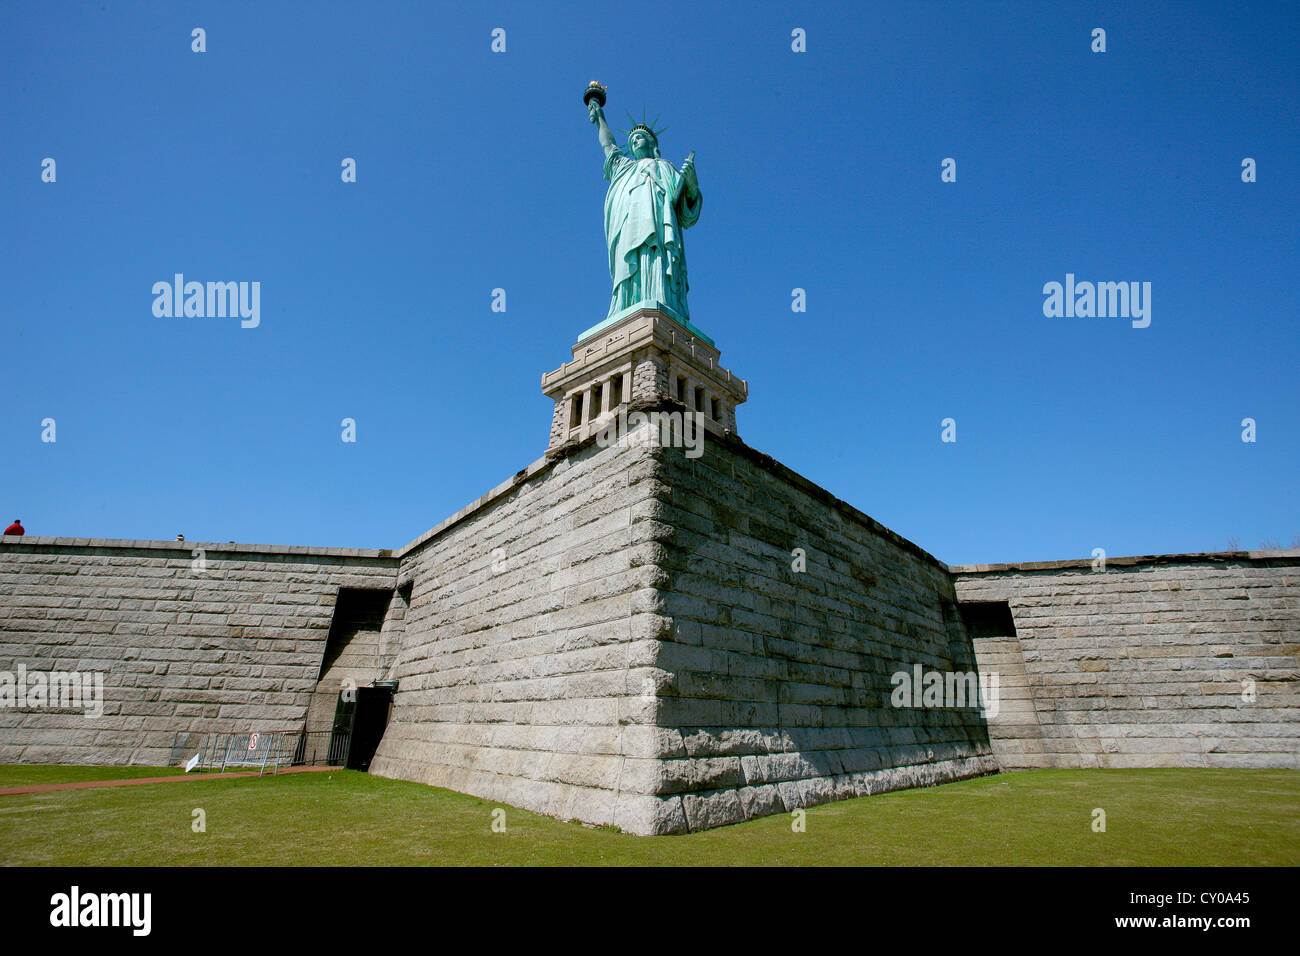 Statue de la liberté, Liberty Island, New York City, New York, United States, Amérique du Nord Banque D'Images